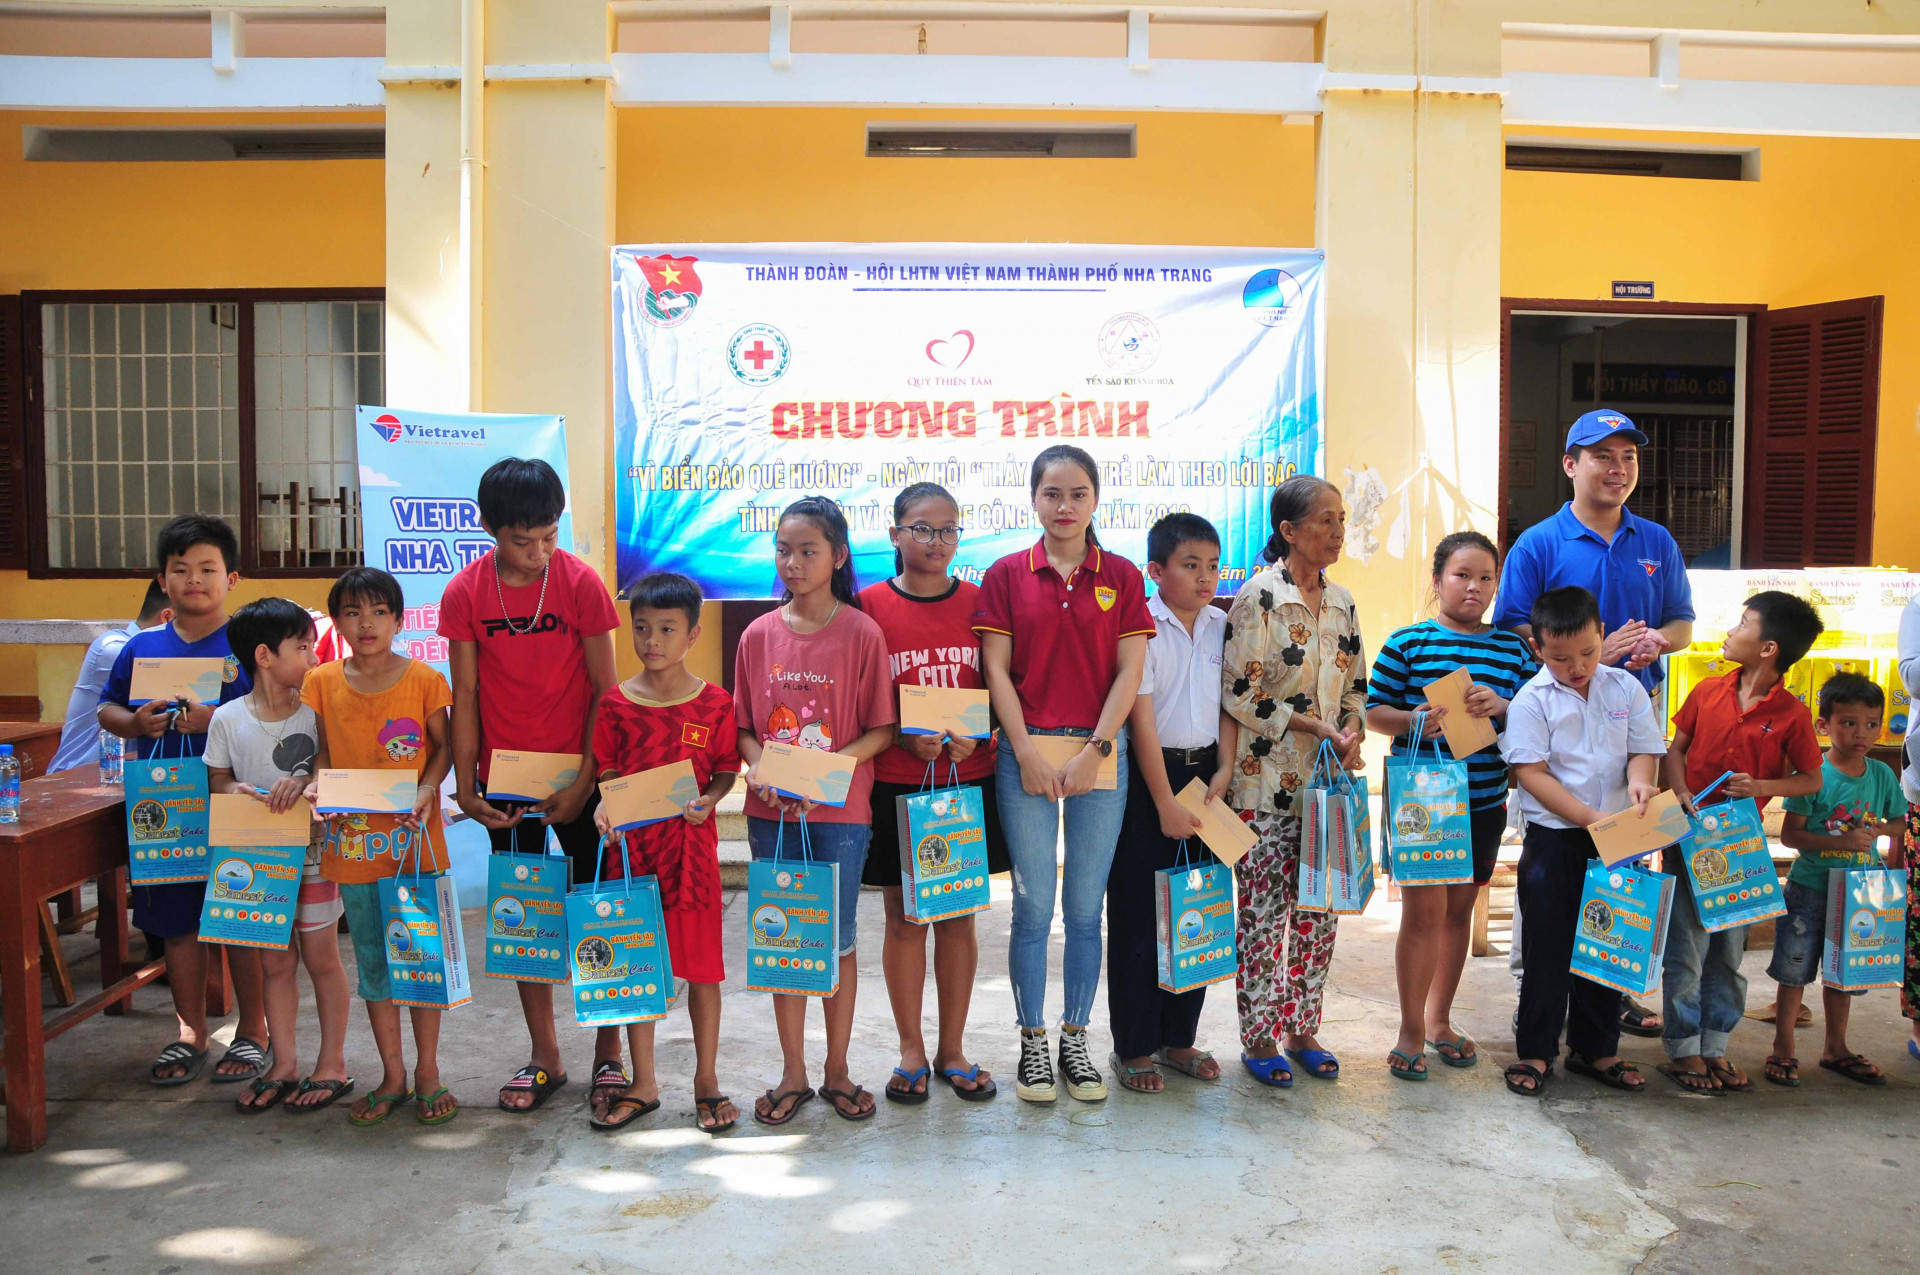 Thành đoàn Nha Trang cùng Vietravel Nha Trang trao học bổng cho các học sinh có hoàn cảnh khó khăn